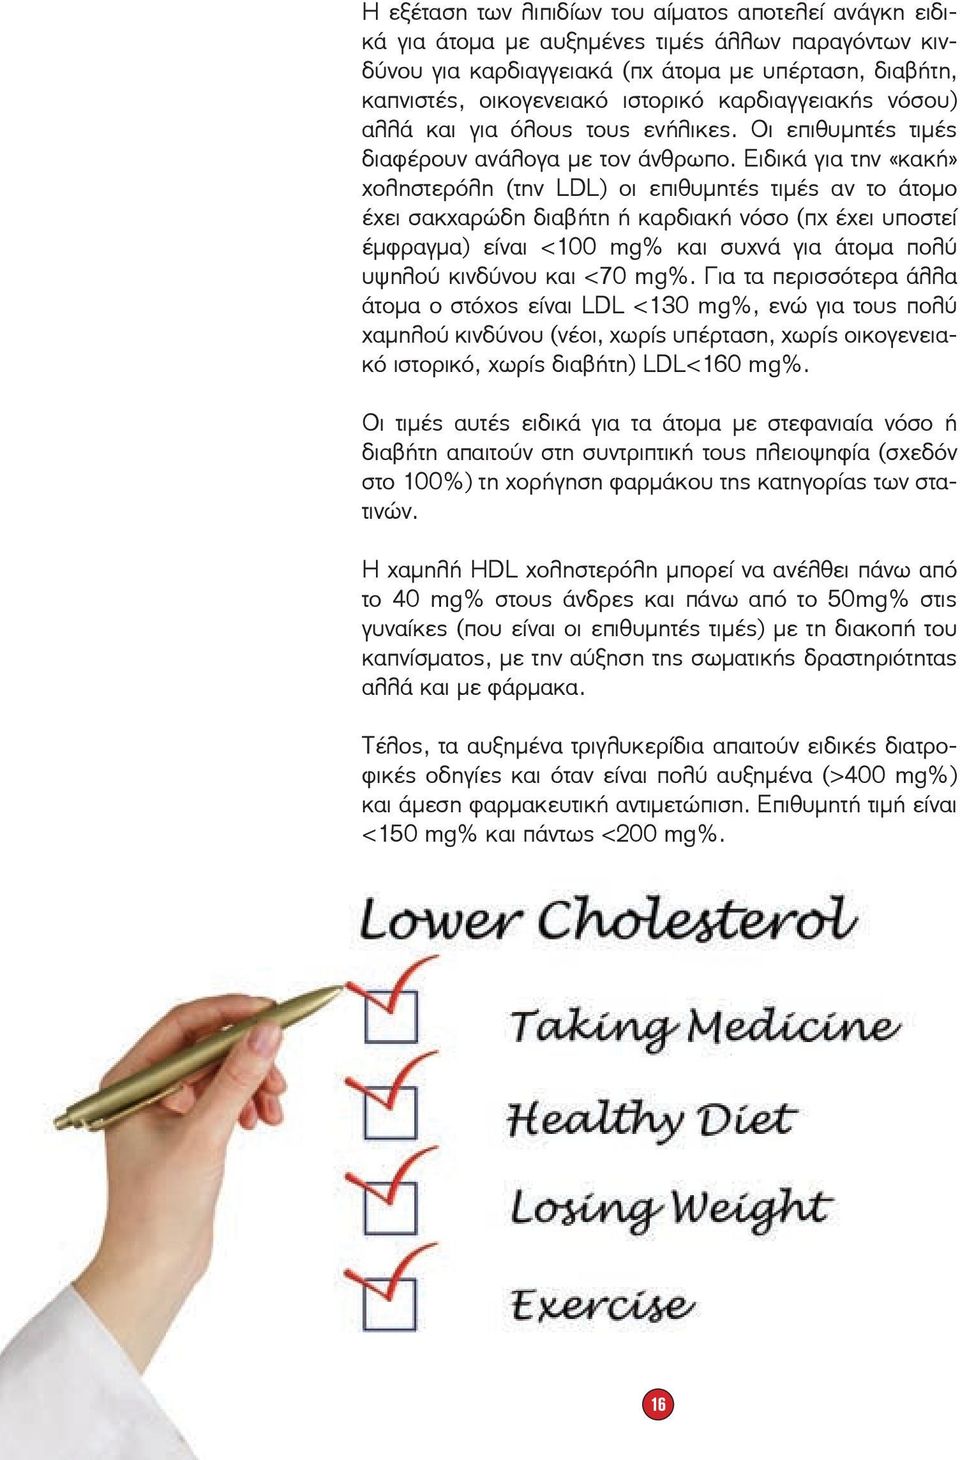 Ειδικά για την «κακή» χοληστερόλη (την LDL) οι επιθυμητές τιμές αν το άτομο έχει σακχαρώδη διαβήτη ή καρδιακή νόσο (πχ έχει υποστεί έμφραγμα) είναι <100 mg% και συχνά για άτομα πολύ υψηλού κινδύνου